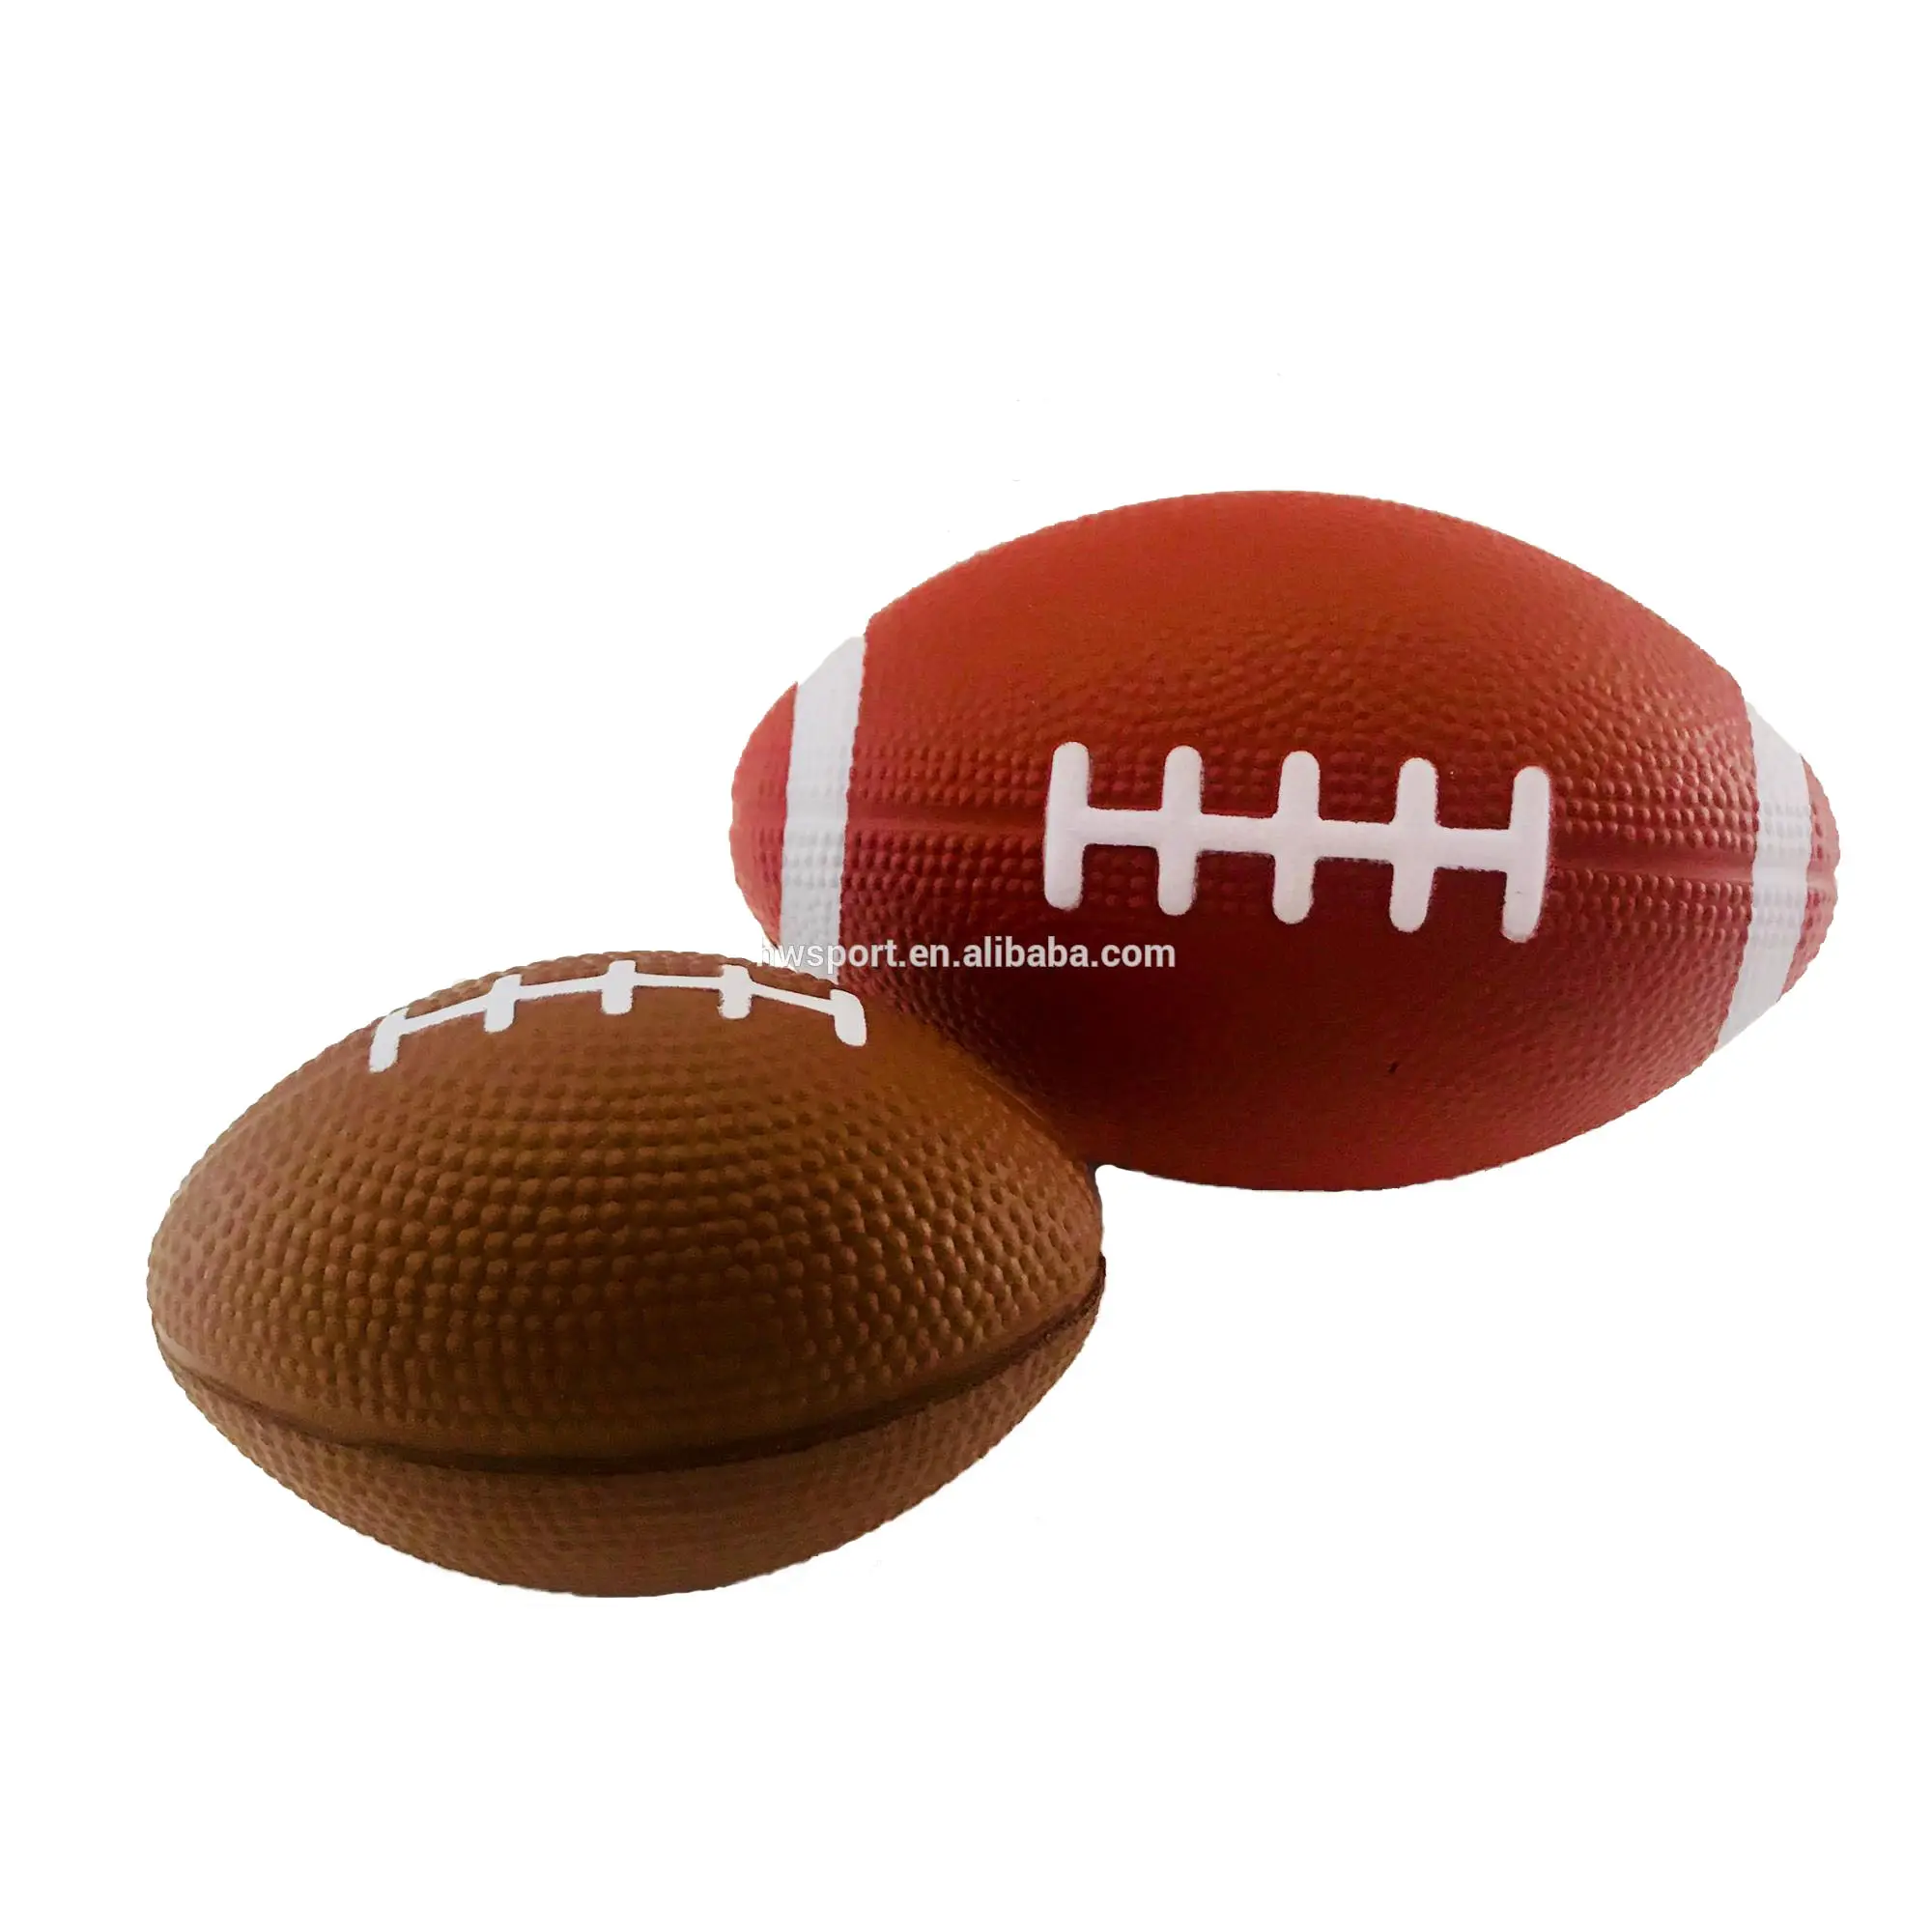 Лидер продаж, популярный индивидуальный полиуретановый пенопласт с логотипом под заказ, коричневая полиуретановая пена для регби, антистрессовый мяч, спортивная игрушка, футбольные игрушки-Мячи